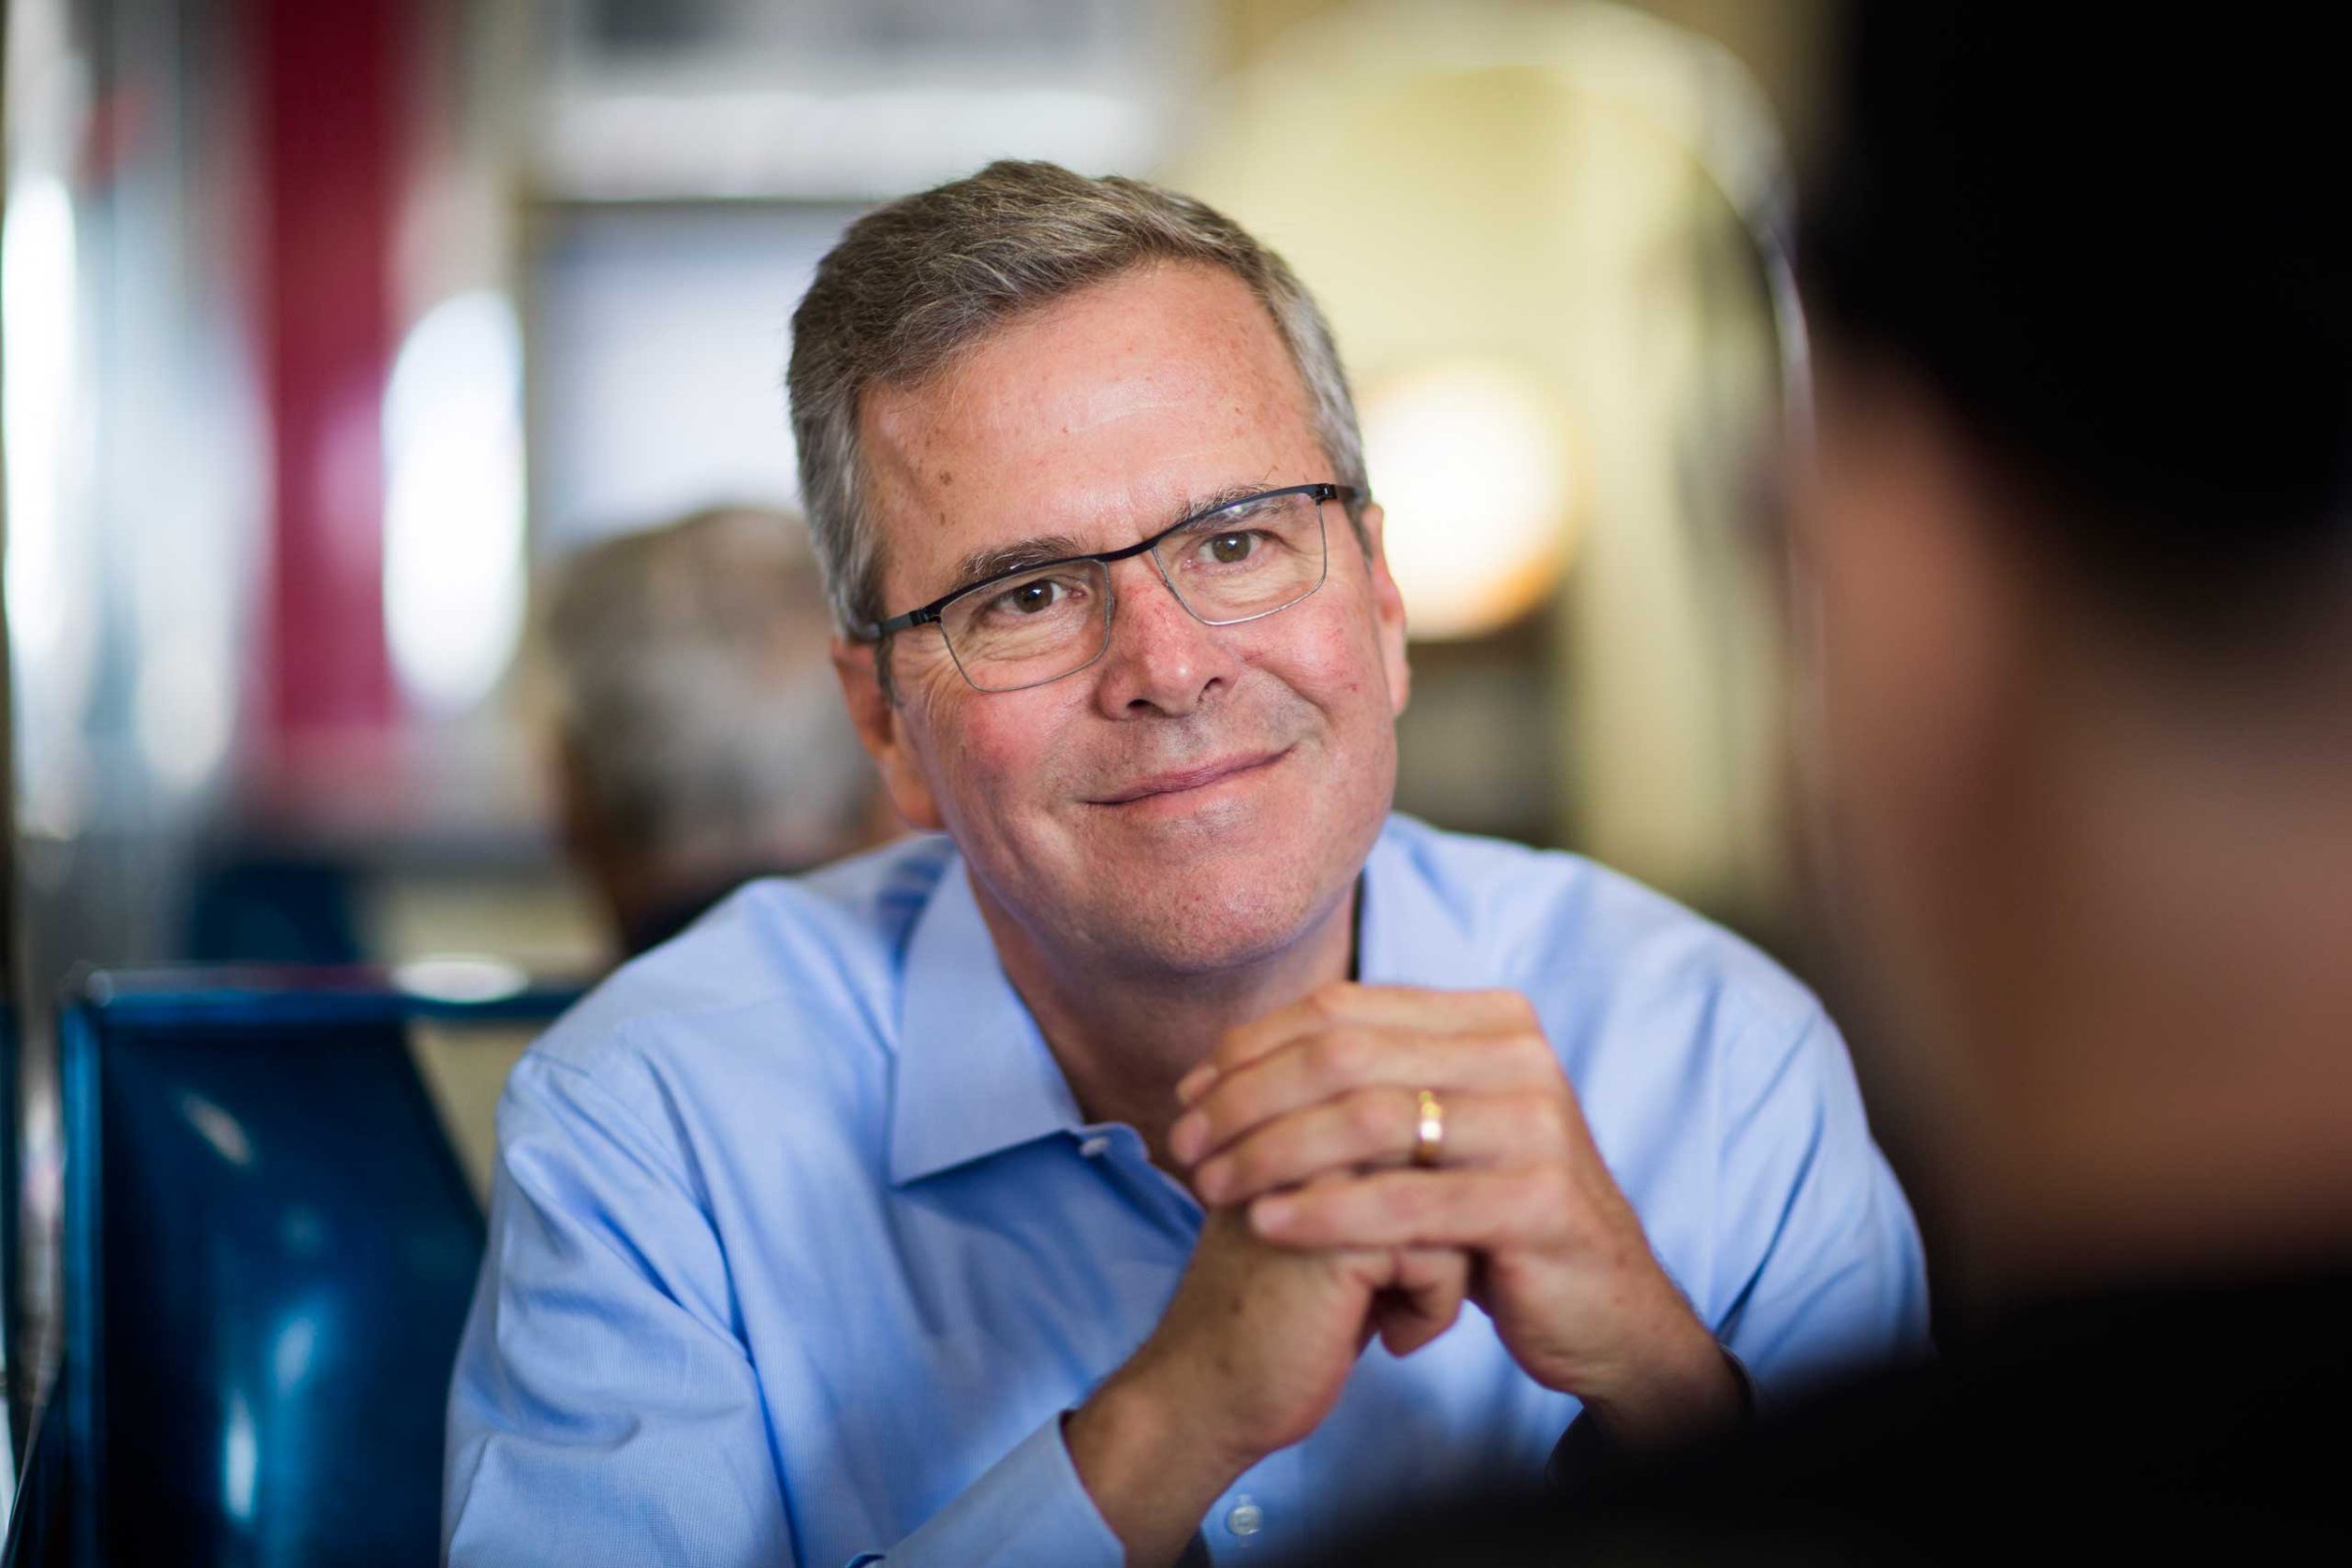 Former Florida Governor Bush at MaryAnne's Diner in Derry, N.H. on April 17, 2015.